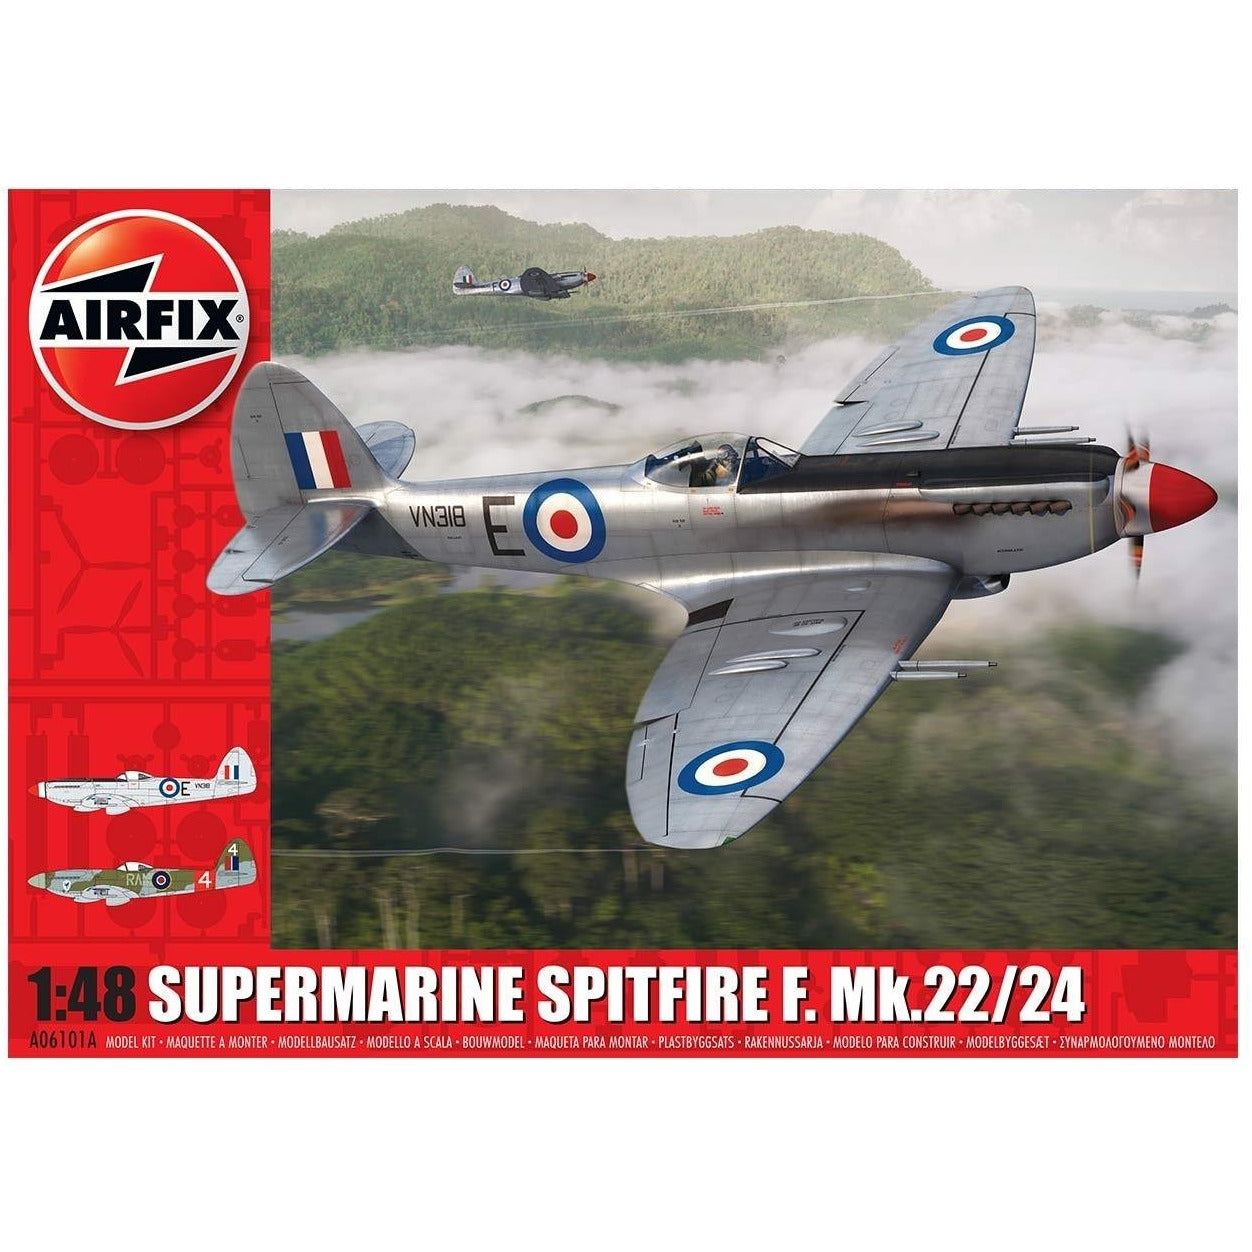 Supermarine Spitfire F. MK. 22/24 1/48 by Airfix